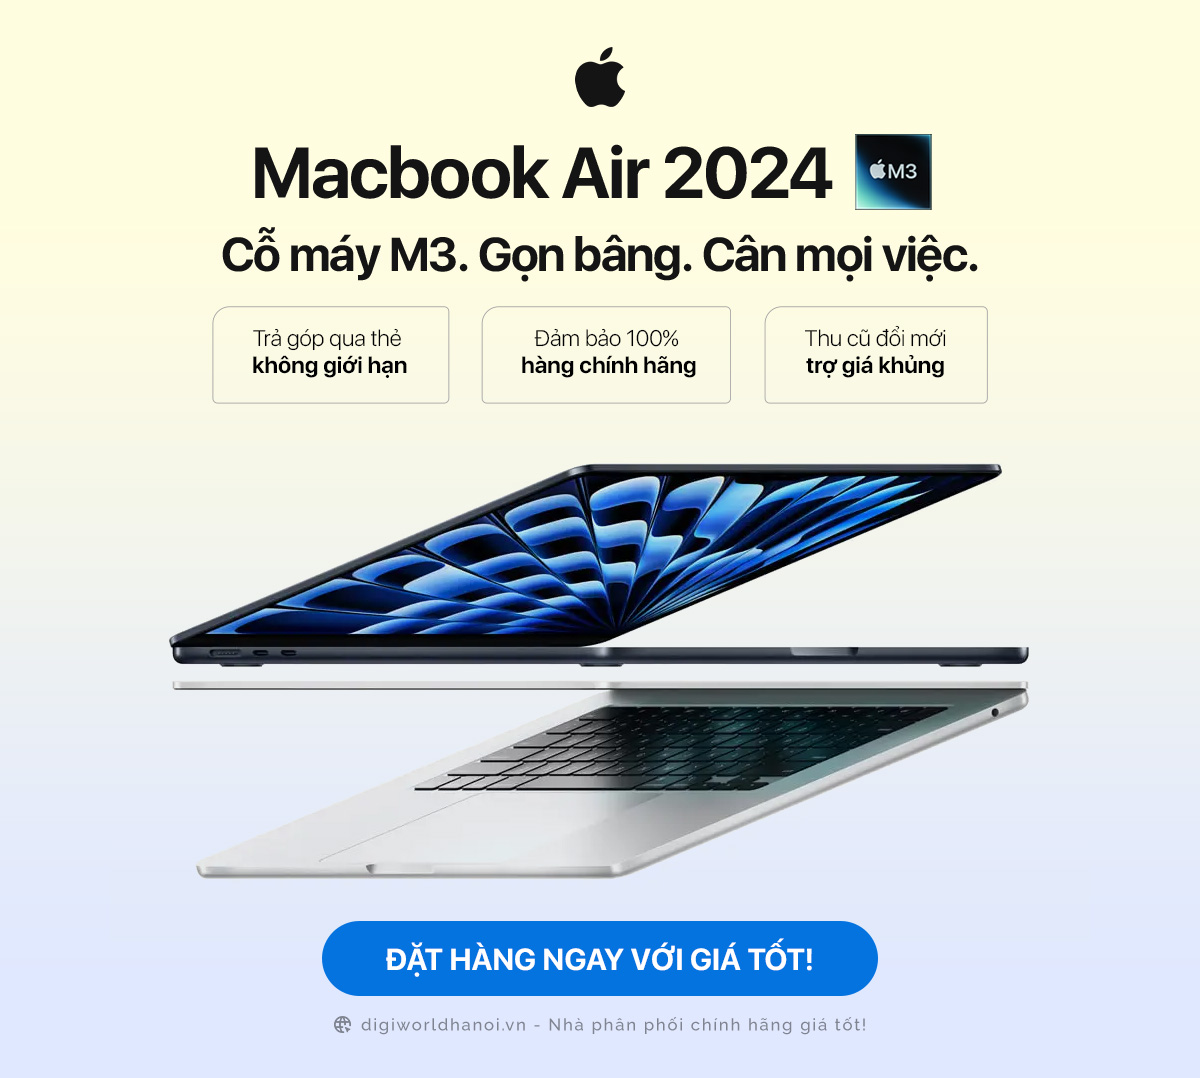 Macbook Air 2024 với chip M3 siêu nhanh, đặt trước với giá tốt tại Digiworld Hà Nội!